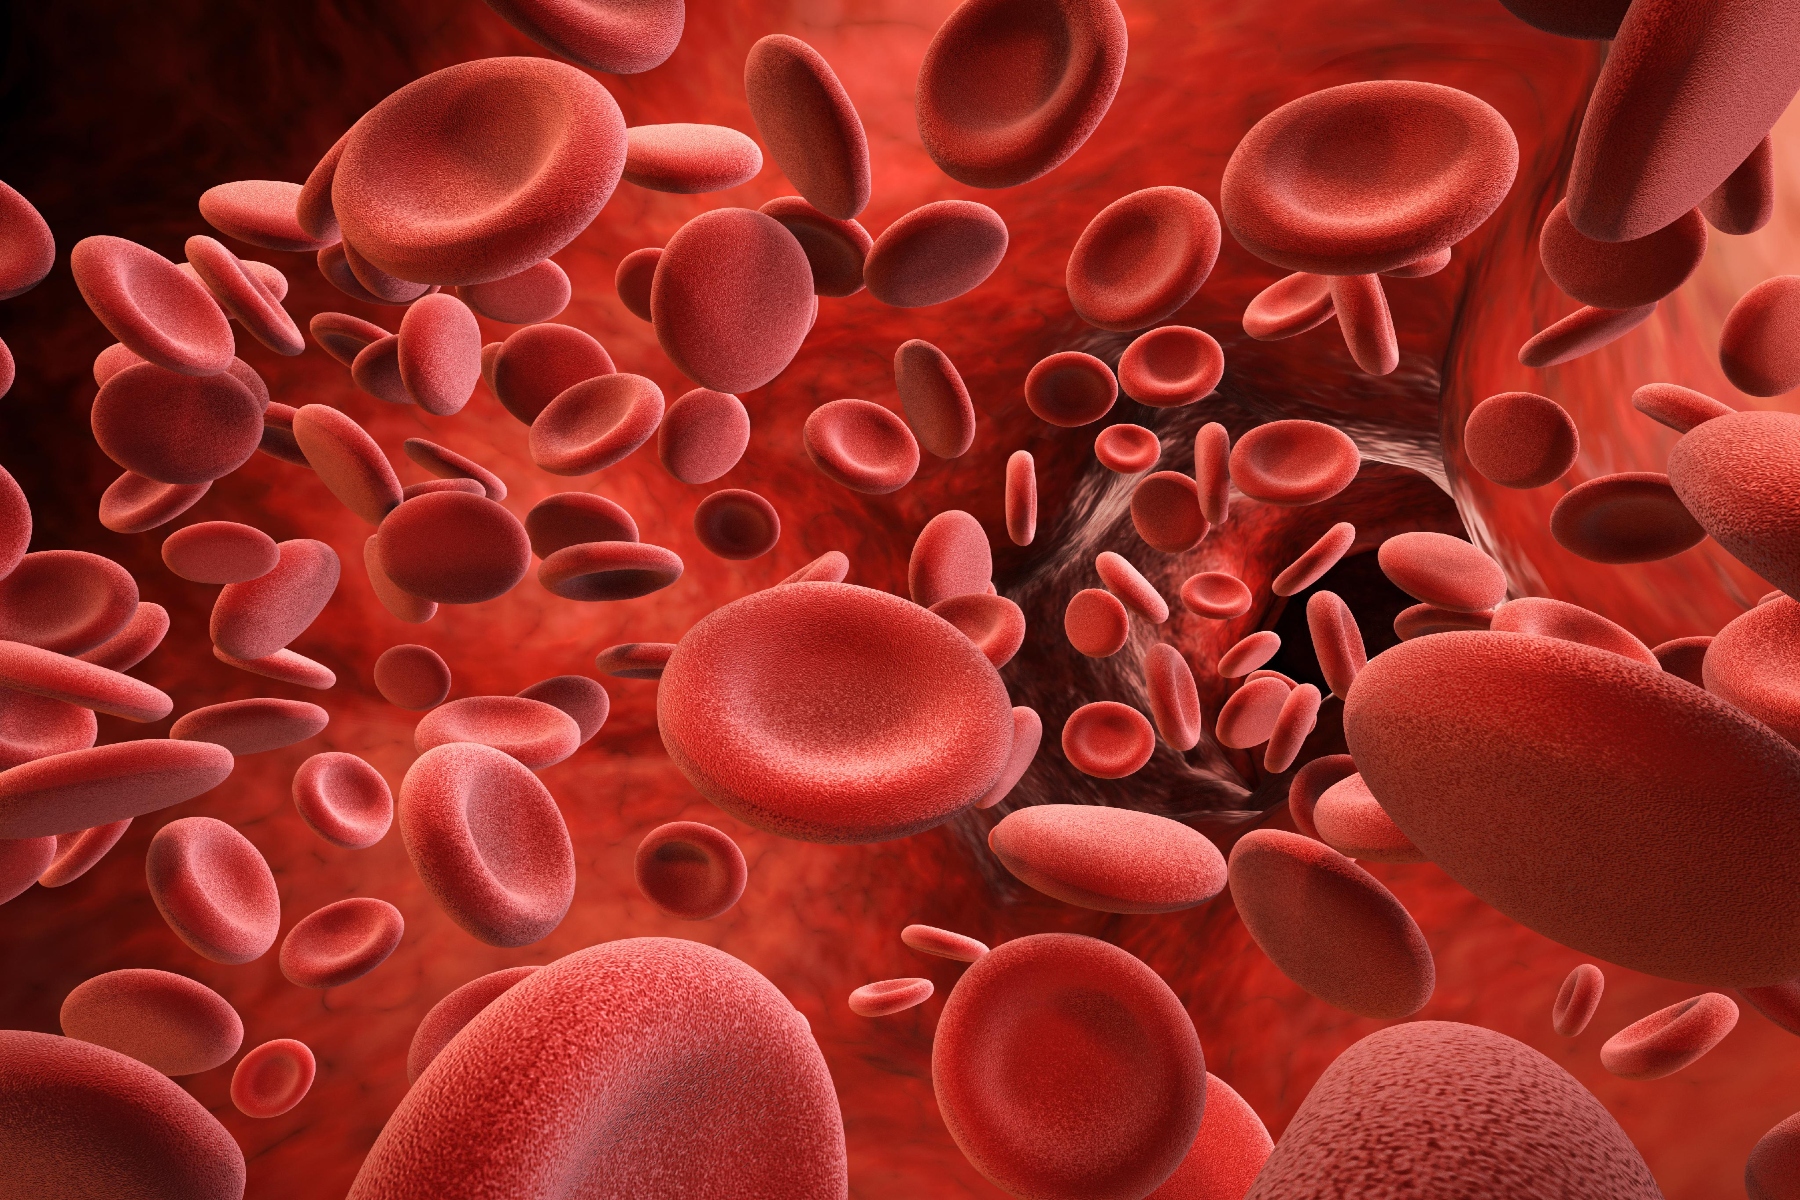 Αιμοχρωμάτωση: Υψηλότερα επίπεδα ασθένειας στους ηλικιωμένους